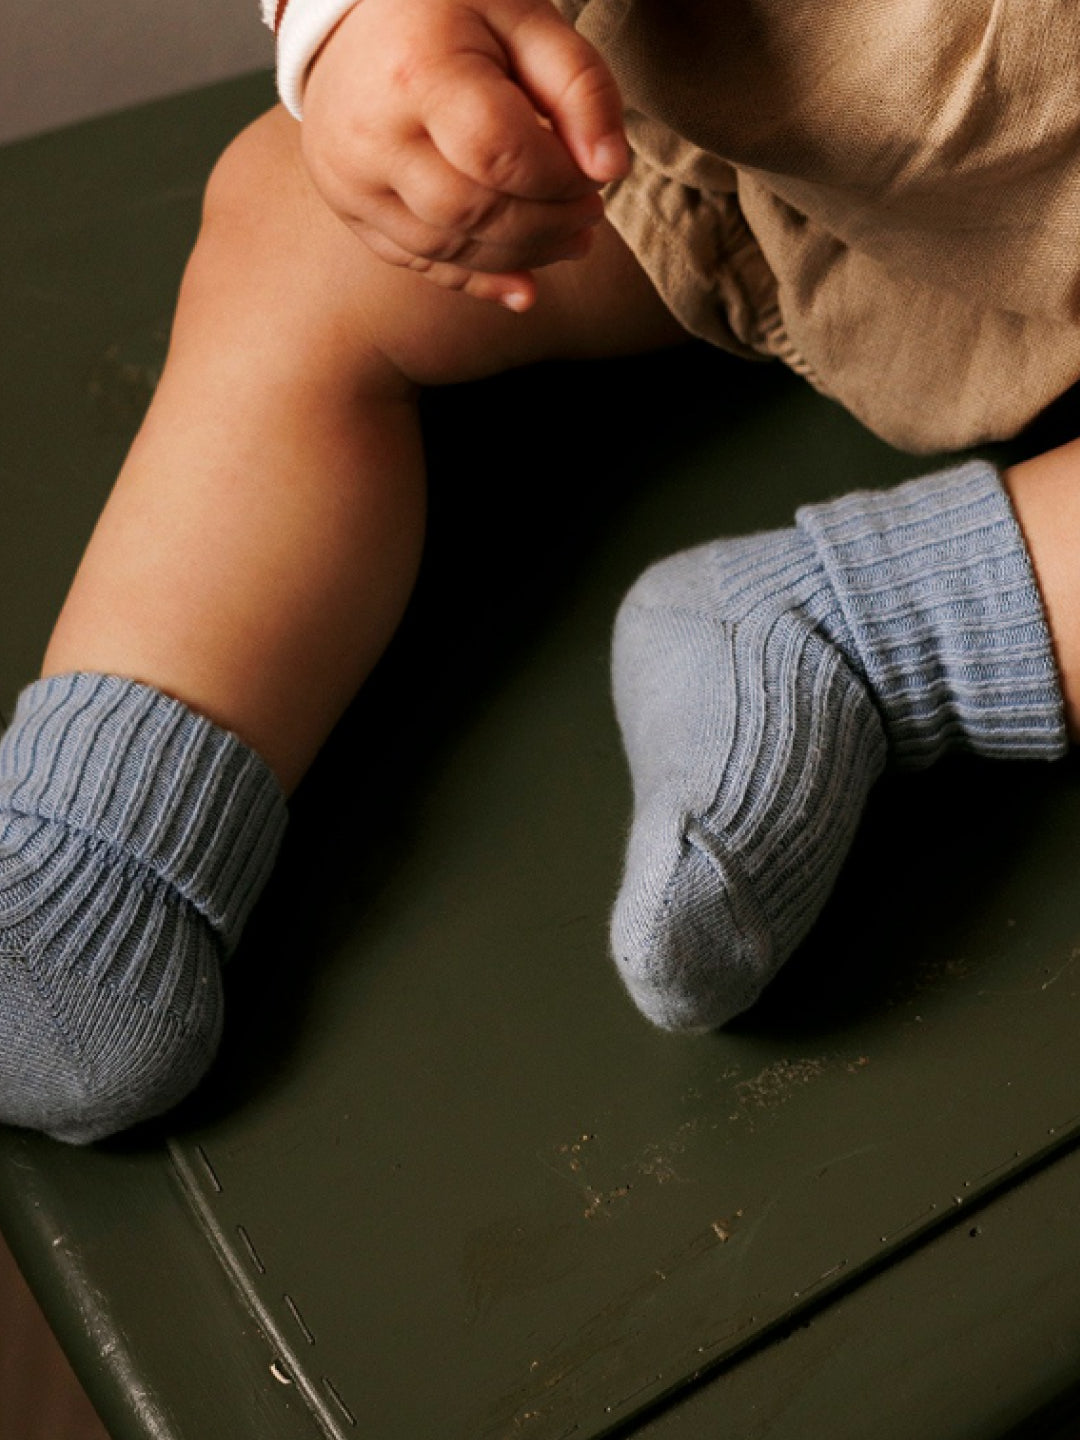 100% Merino Wool TUBES Kids Leggings [Navy Blue] – Ella's Wool